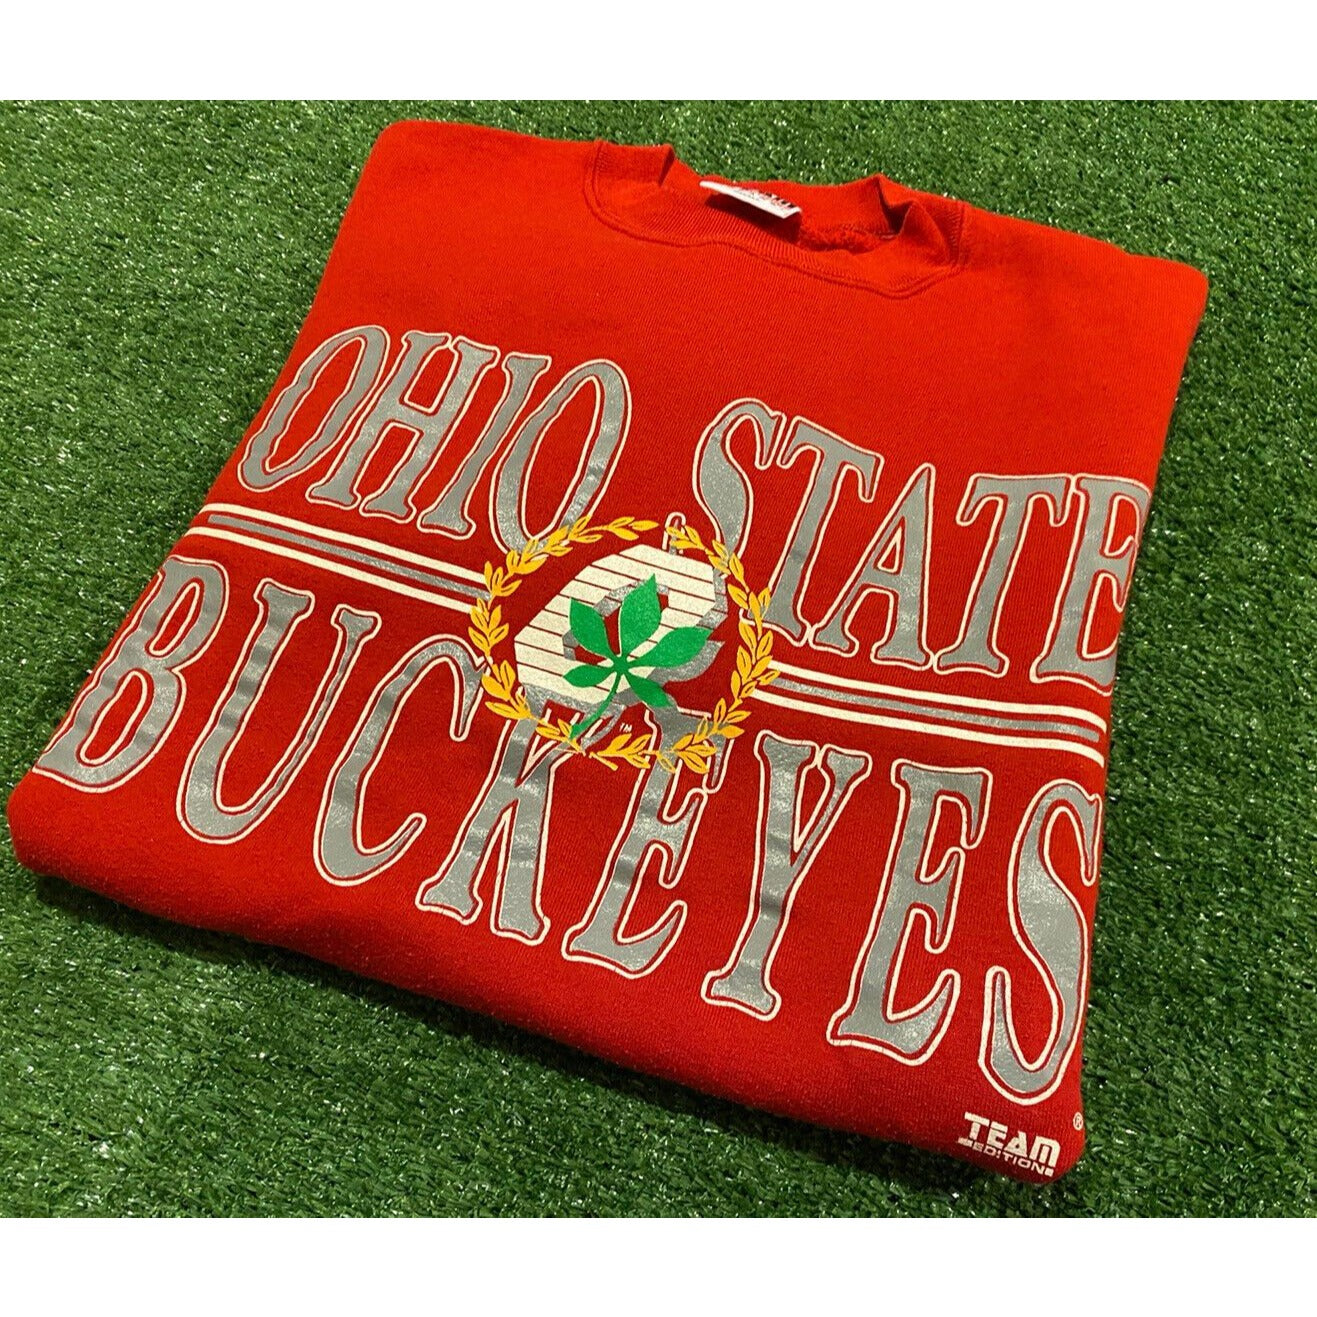 Vintage Ohio State Buckeyes crewneck sweatshirt small red mens adult OSU 90s